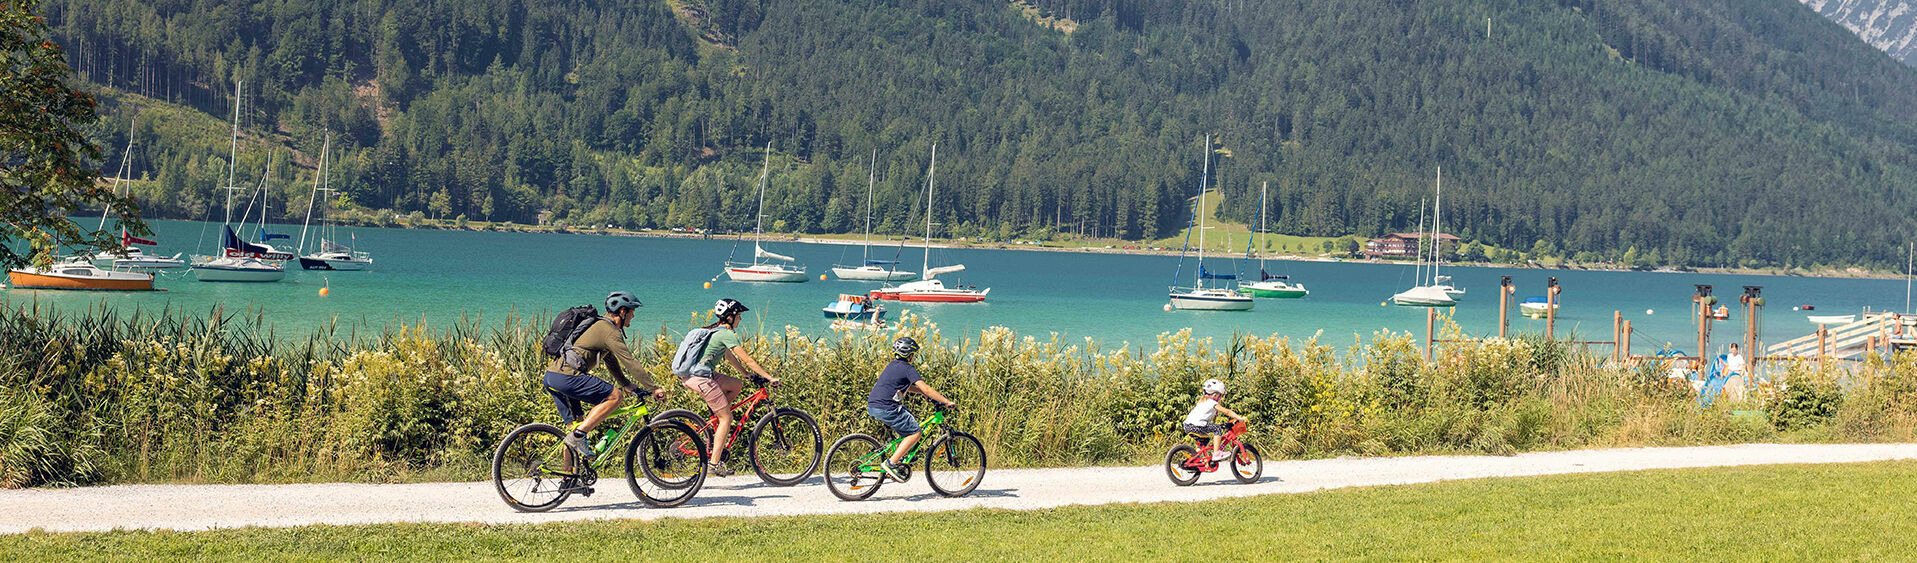 Einen Familienausflug mit dem Rad am Seeufer in Maurach am Achensee machen. Im Hintergrund sind zahlreiche Segelboote zu sehen.